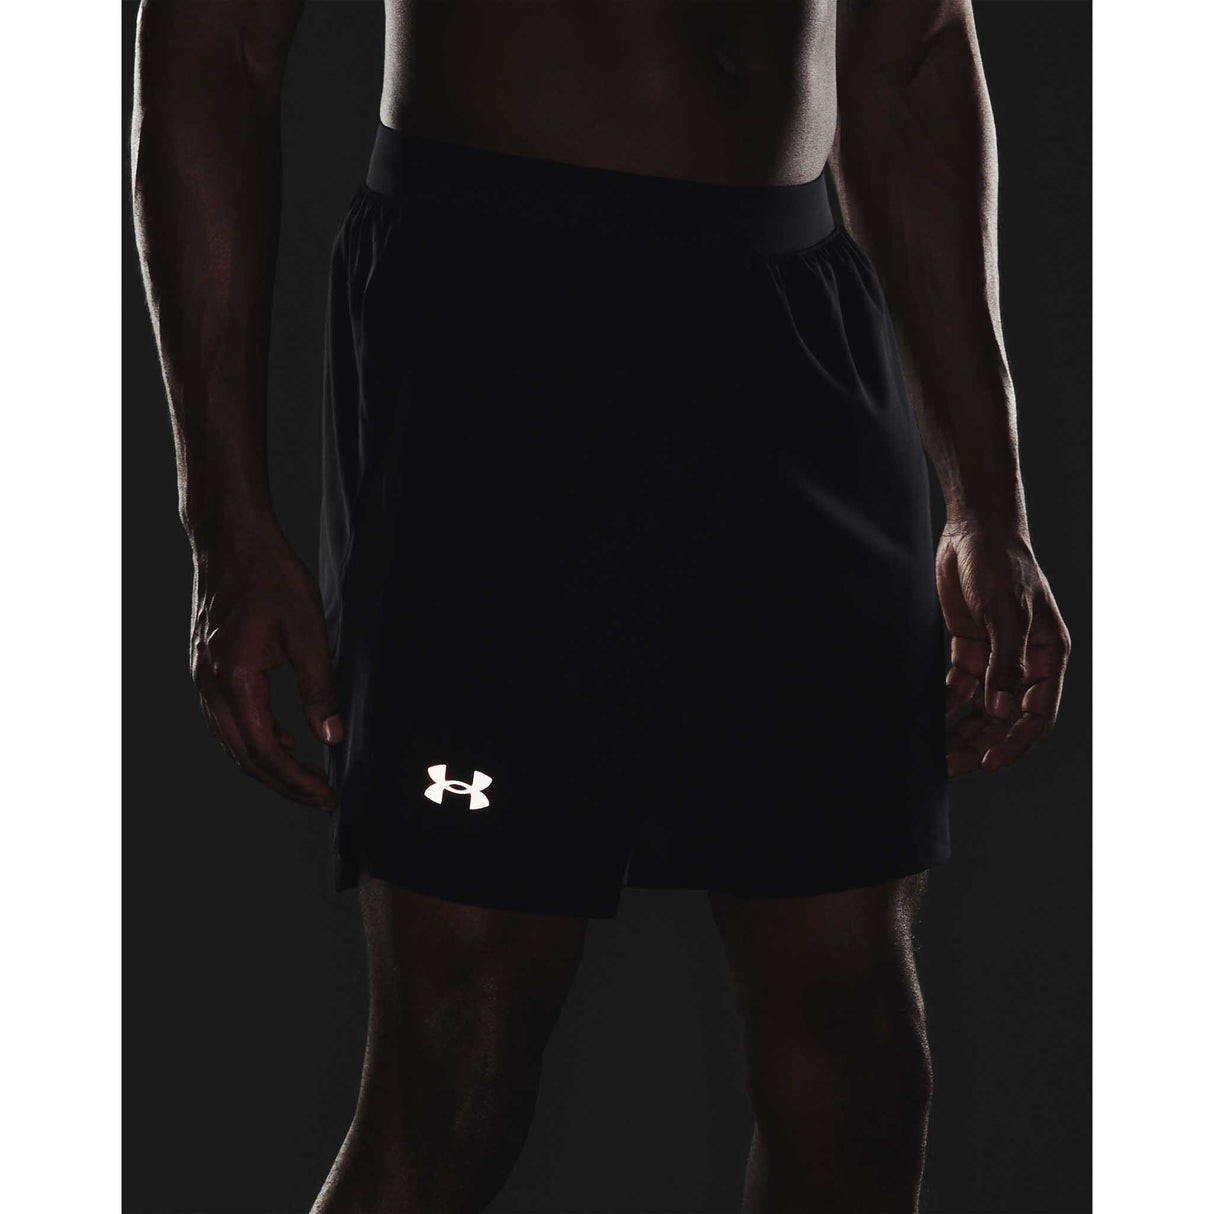 Under Armour Launch 7 pouces shorts homme logo refléchissant- Black / Reflective